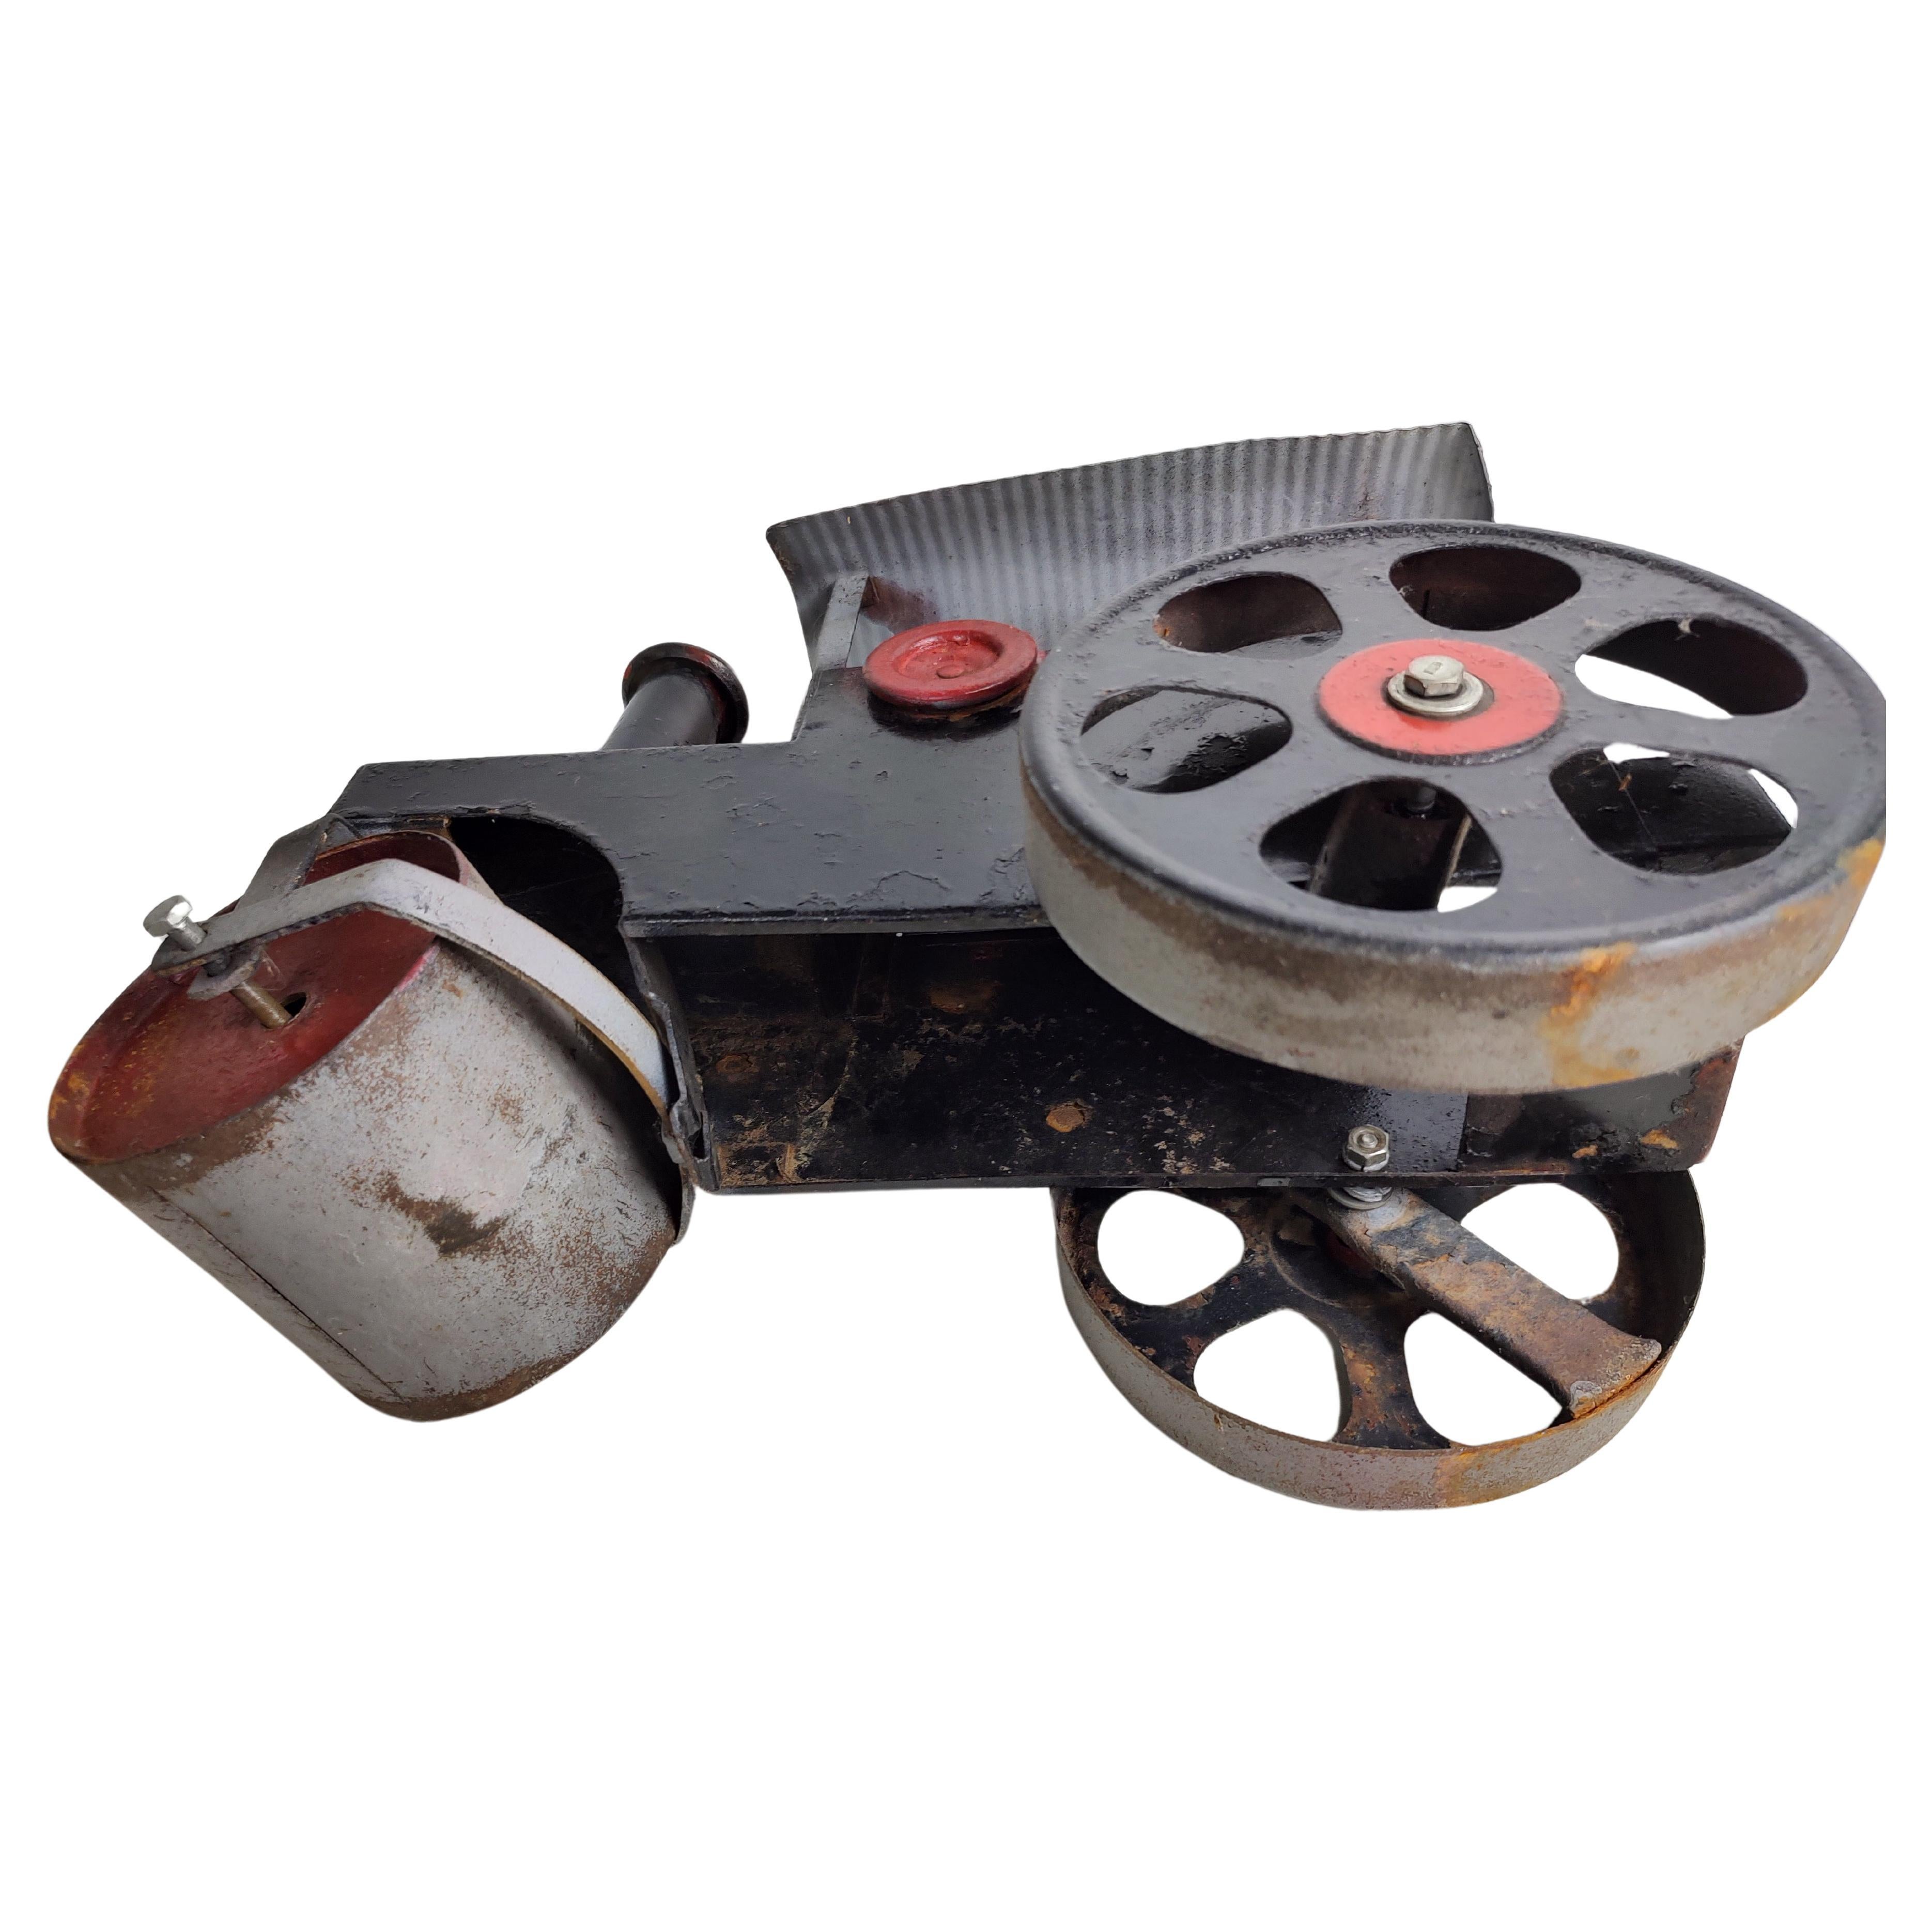 antique toy steam engine